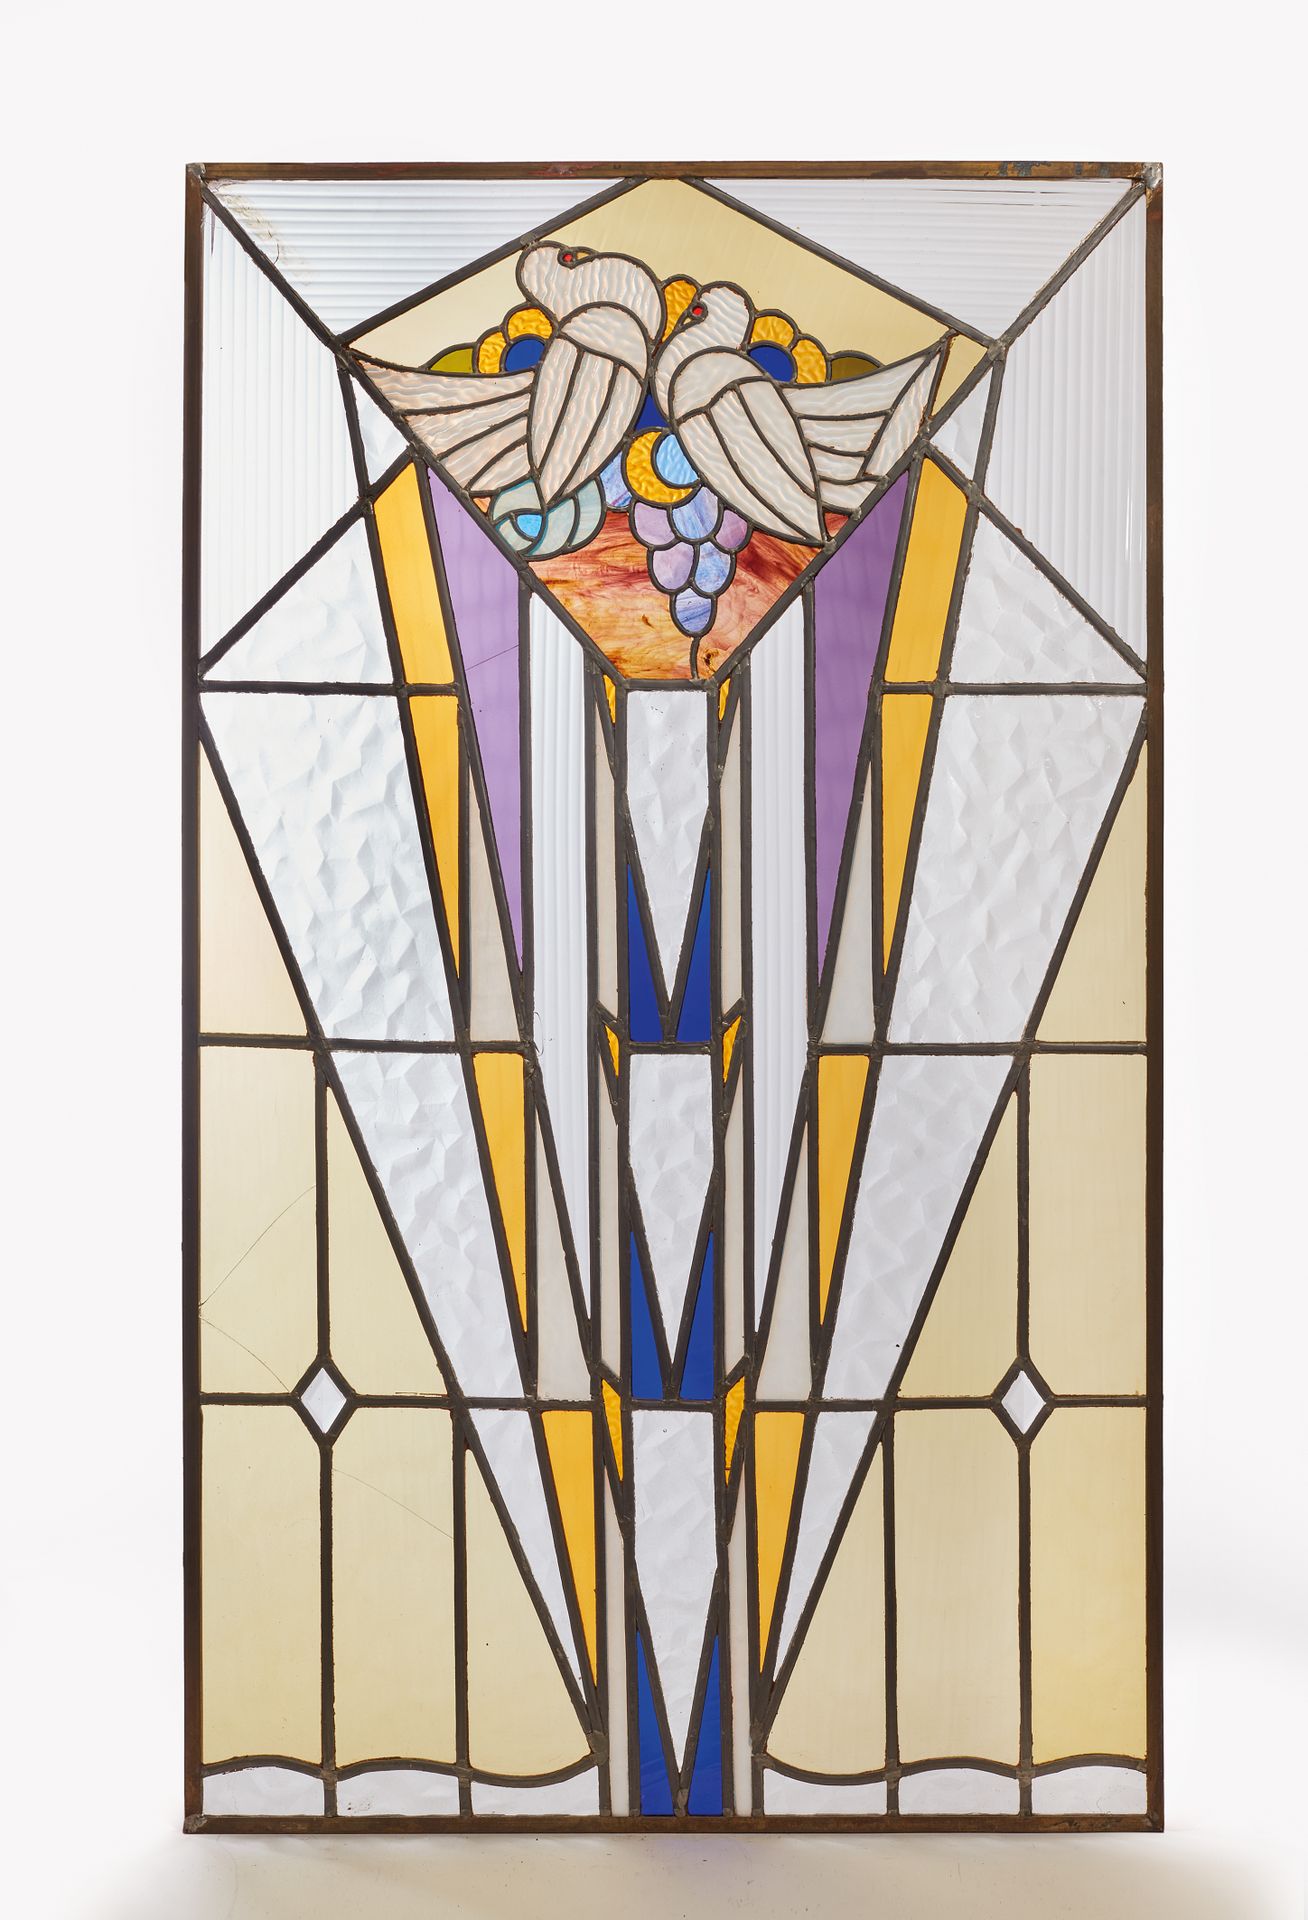 Null 白色和多色玻璃的长方形彩色玻璃窗，表现了一对鸽子在几何图案上面的形象。

20世纪的作品，装饰艺术风格。

高度103 - 宽度59厘米

小事故。